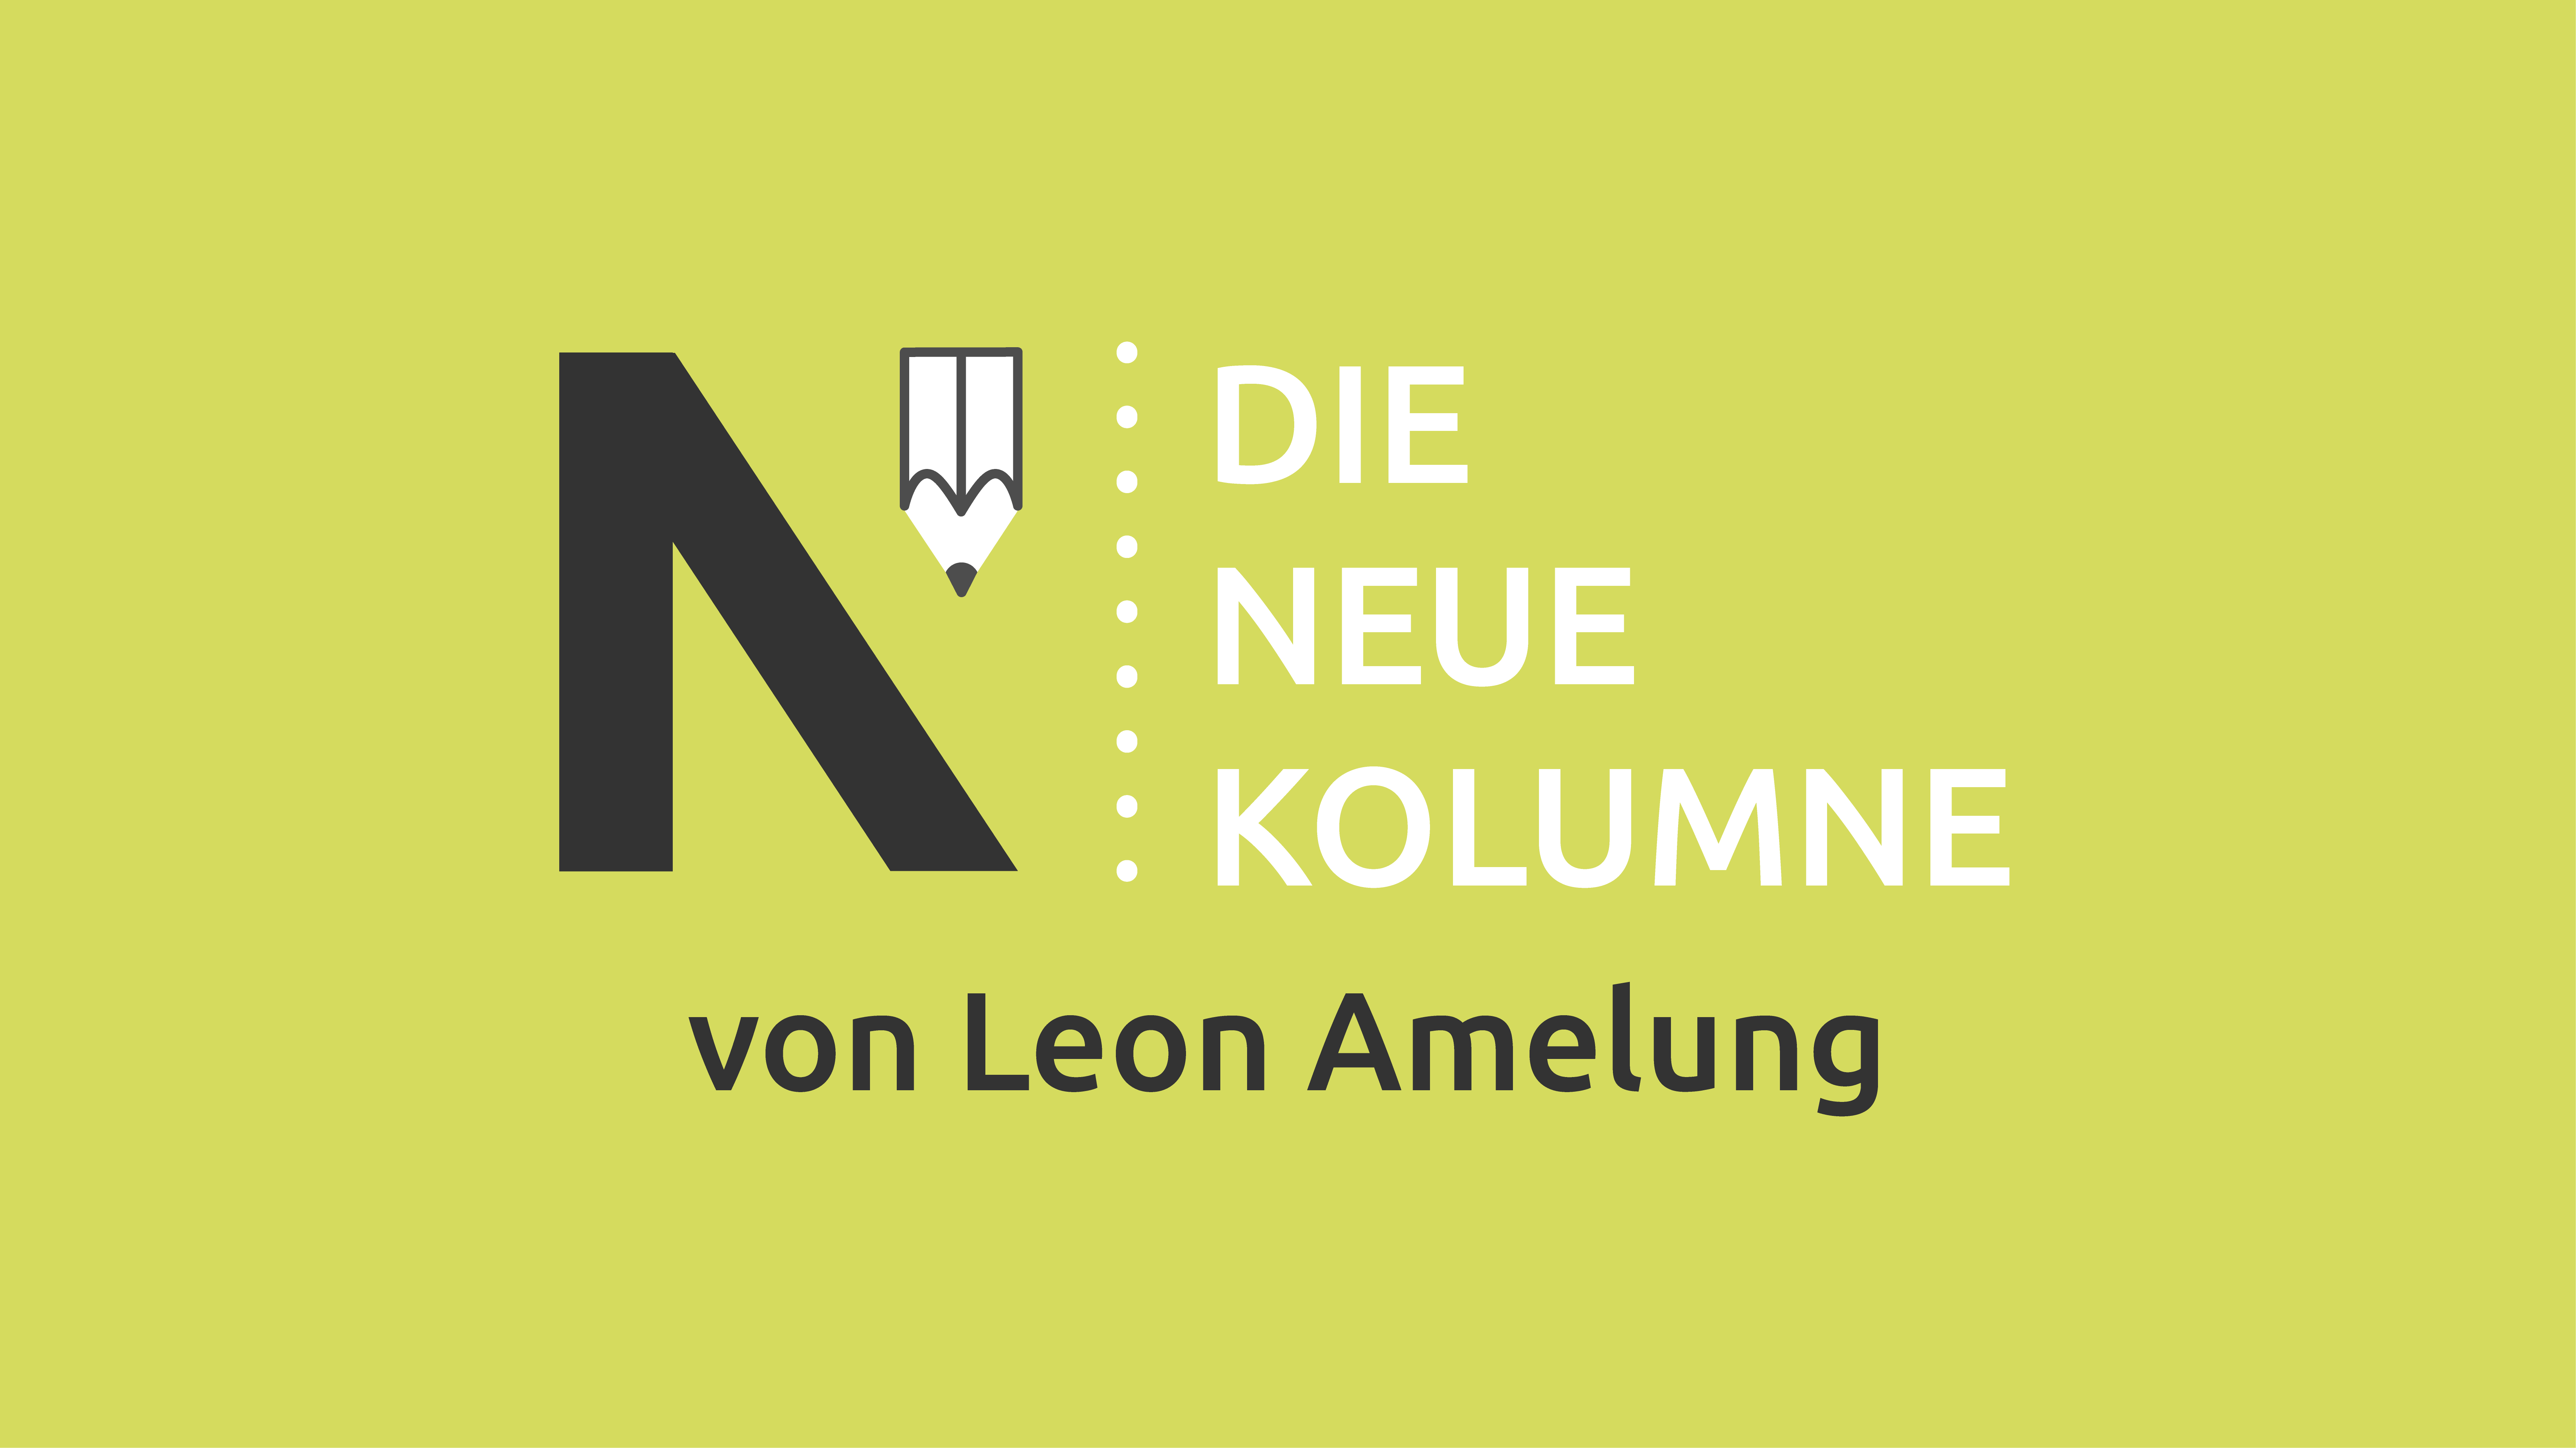 Das Logo von Die Neue Norm auf hellgrünem Grund. Rechts davon steht: Die Neue Kolumne. Unten steht: Leon Amelung.